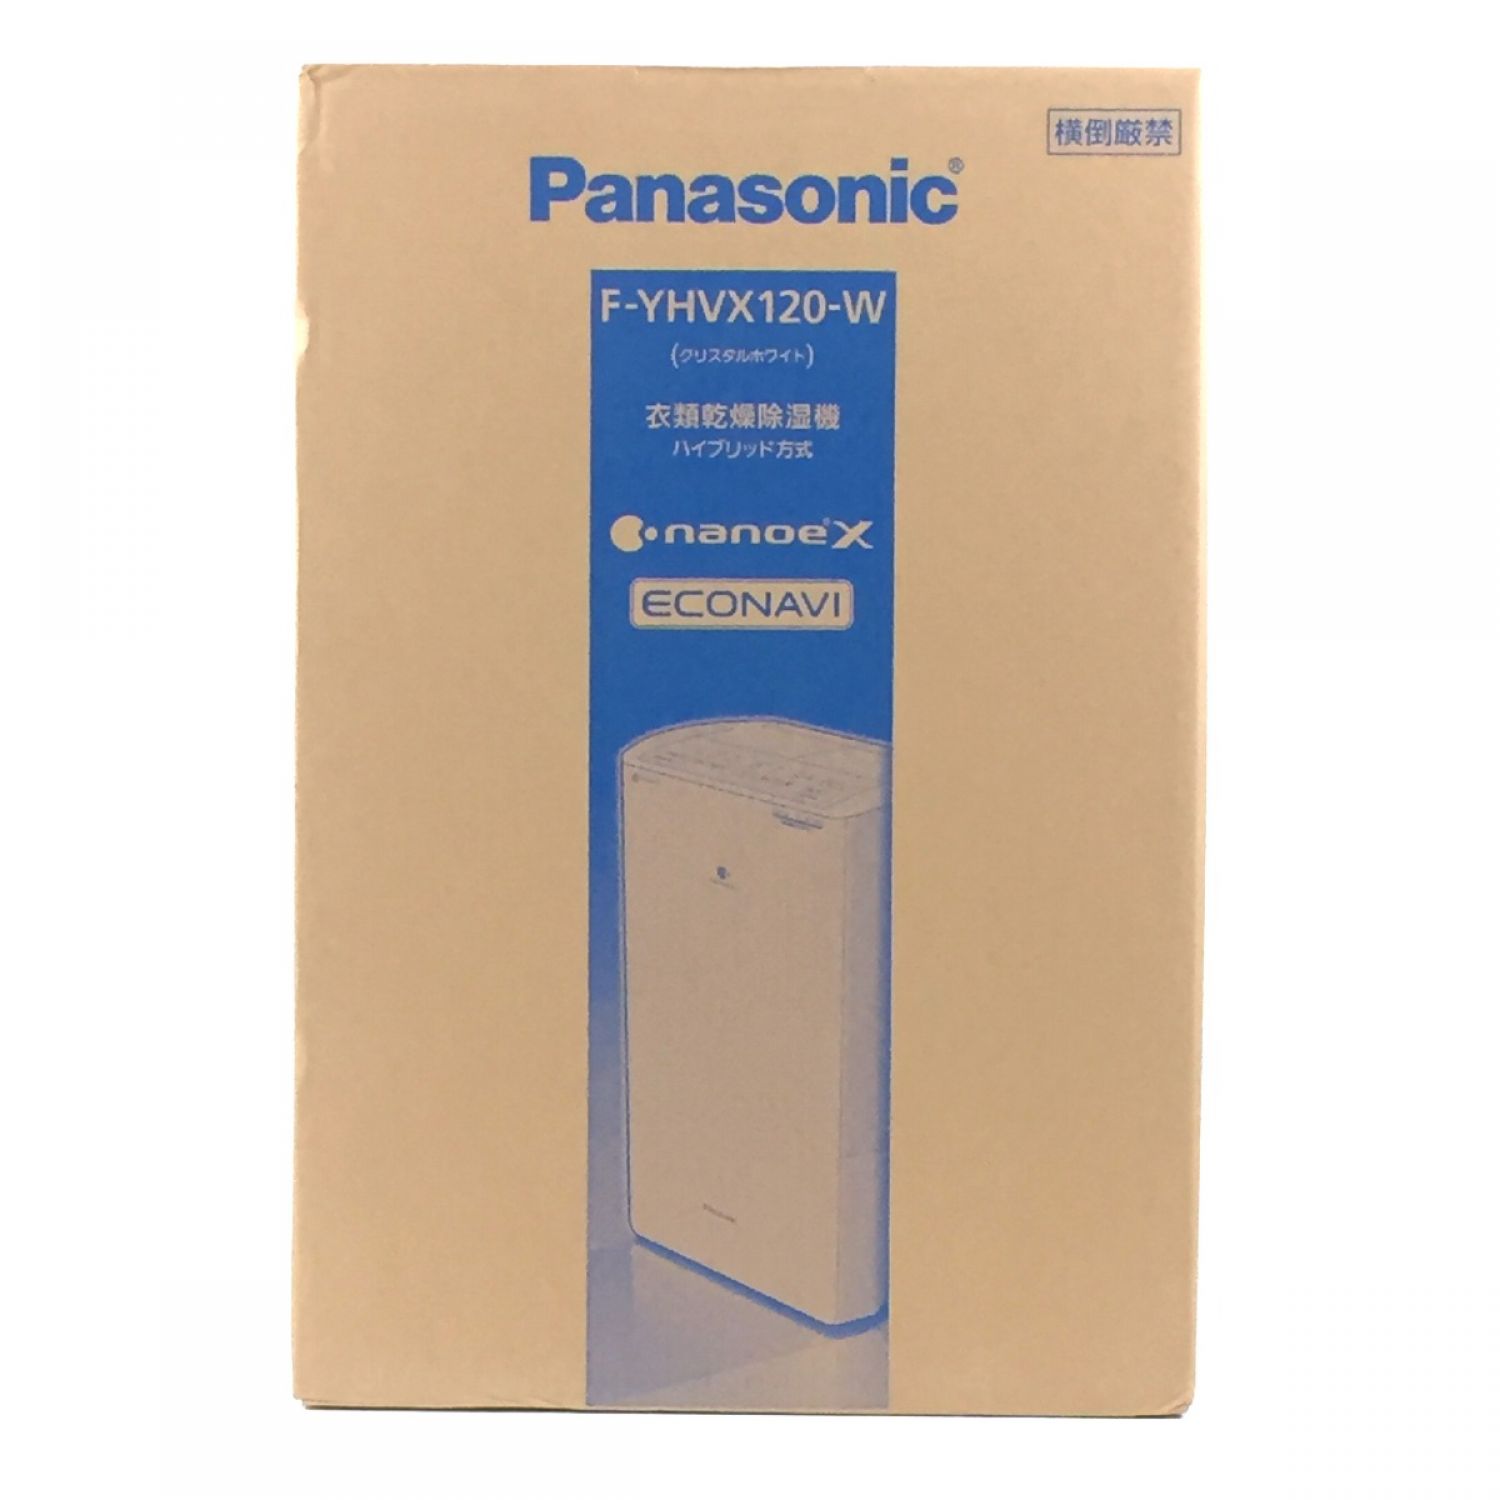 中古】 Panasonic パナソニック 衣類乾燥除湿機 HYBRID&ECONAVI&nanoeX ...